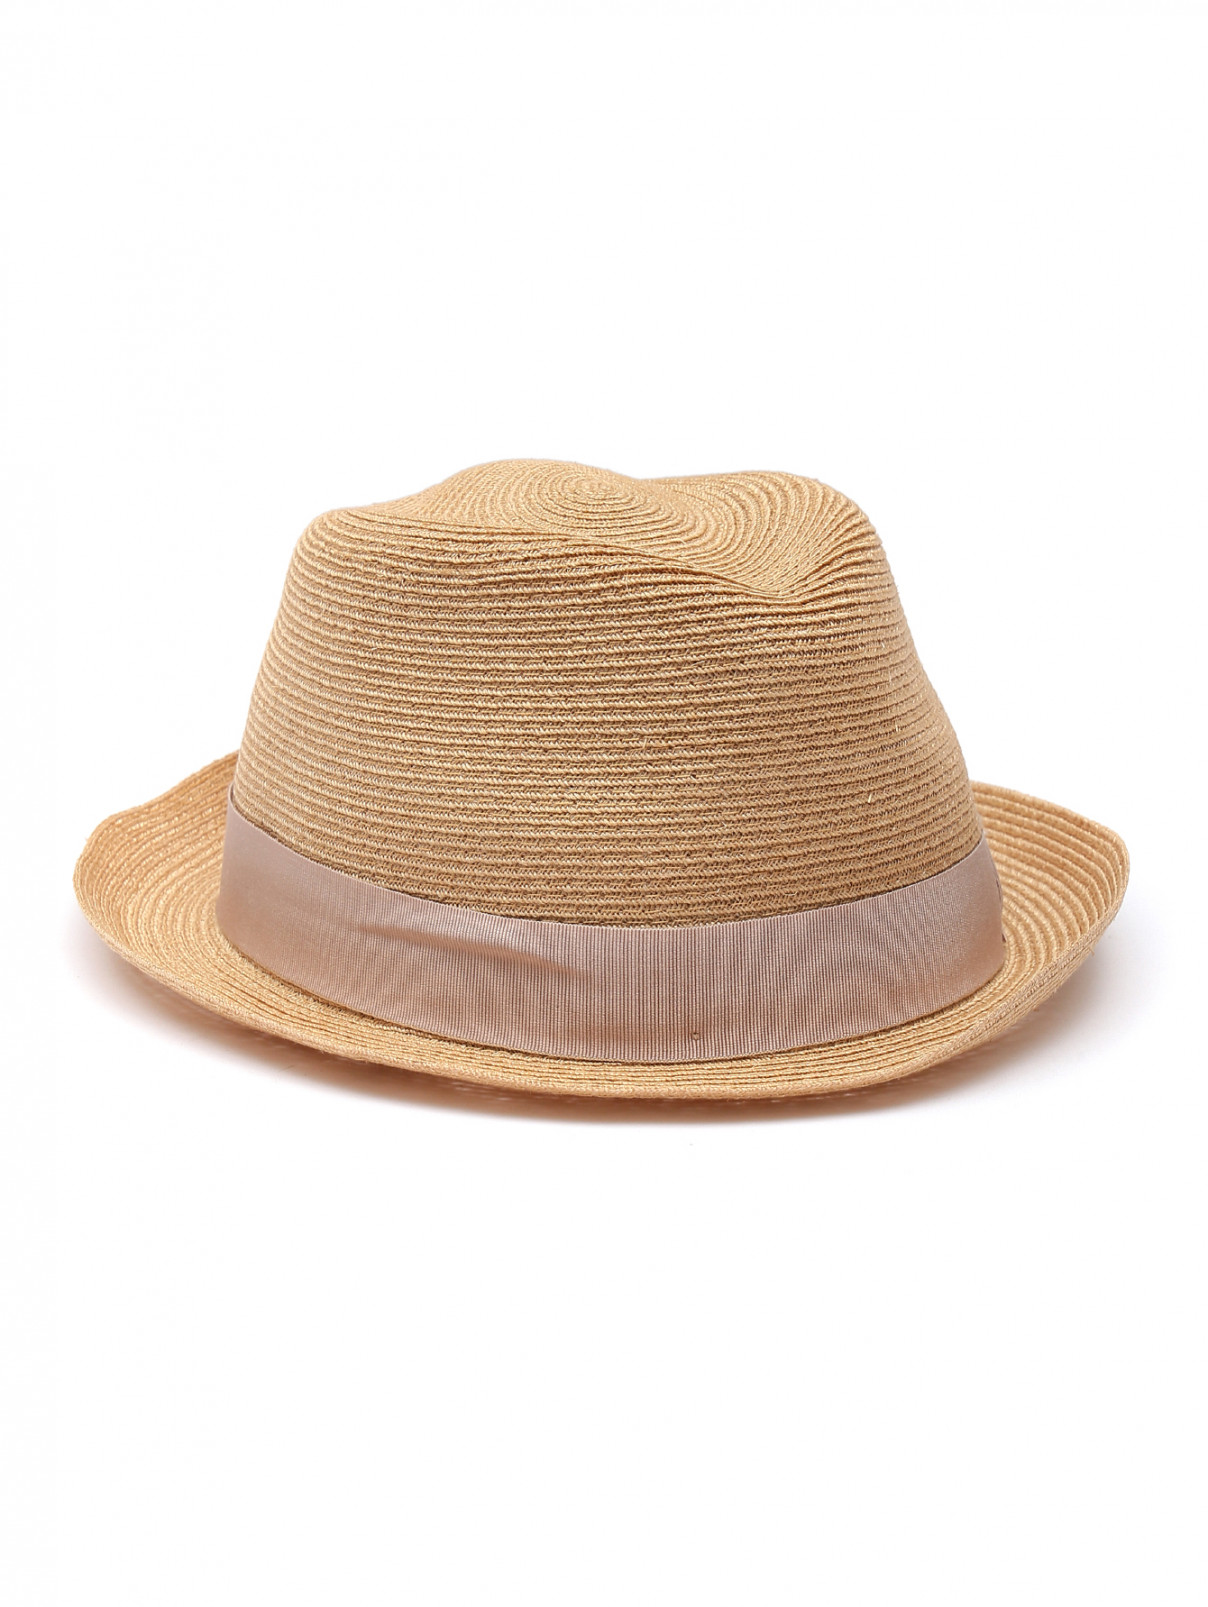 Плетеная шляпа с лентой в тон Borsalino  –  Общий вид  – Цвет:  Бежевый